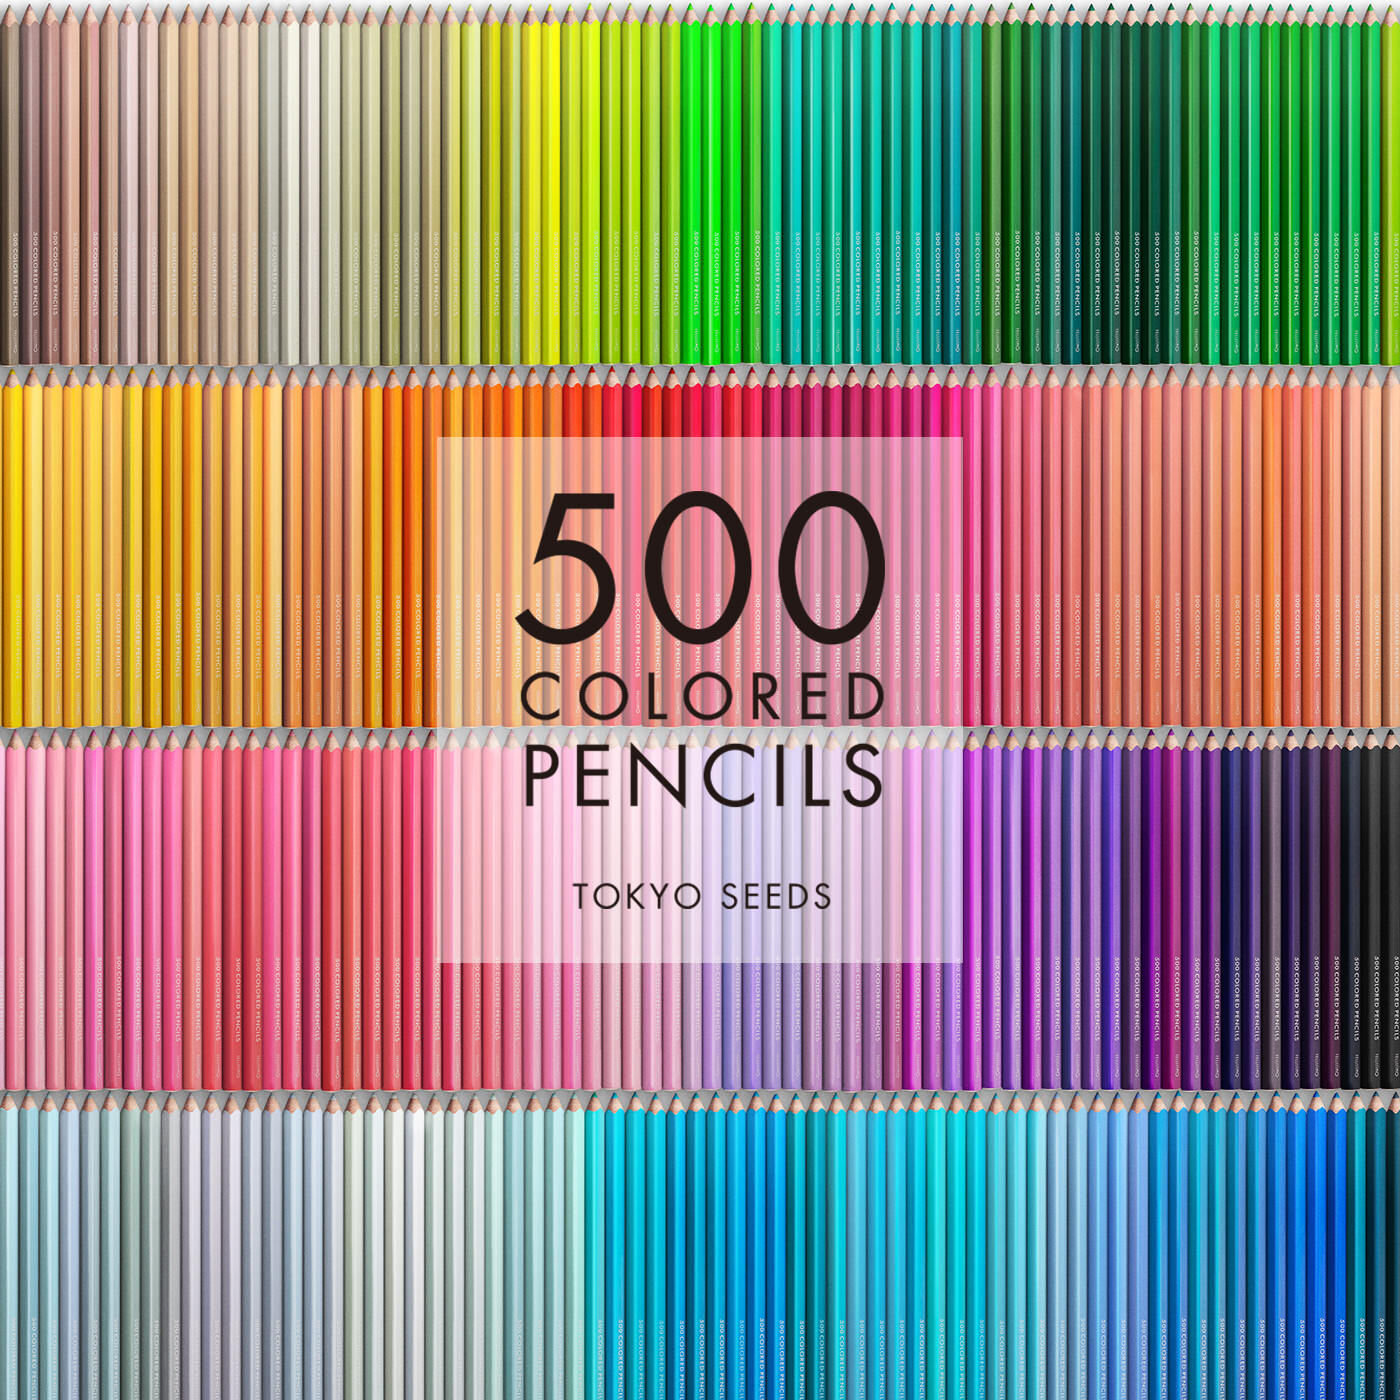 Real Stock|【99/500 ART SHOW】500色の色えんぴつ TOKYO SEEDS|1992年、世界初の「500色」という膨大な色数の色えんぴつが誕生して以来、その販売数は発売当初から合わせると、世界55ヵ国10万セット以上。今回、メイド・イン・ジャパンにこだわり、すべてが新しく生まれ変わって登場しました。